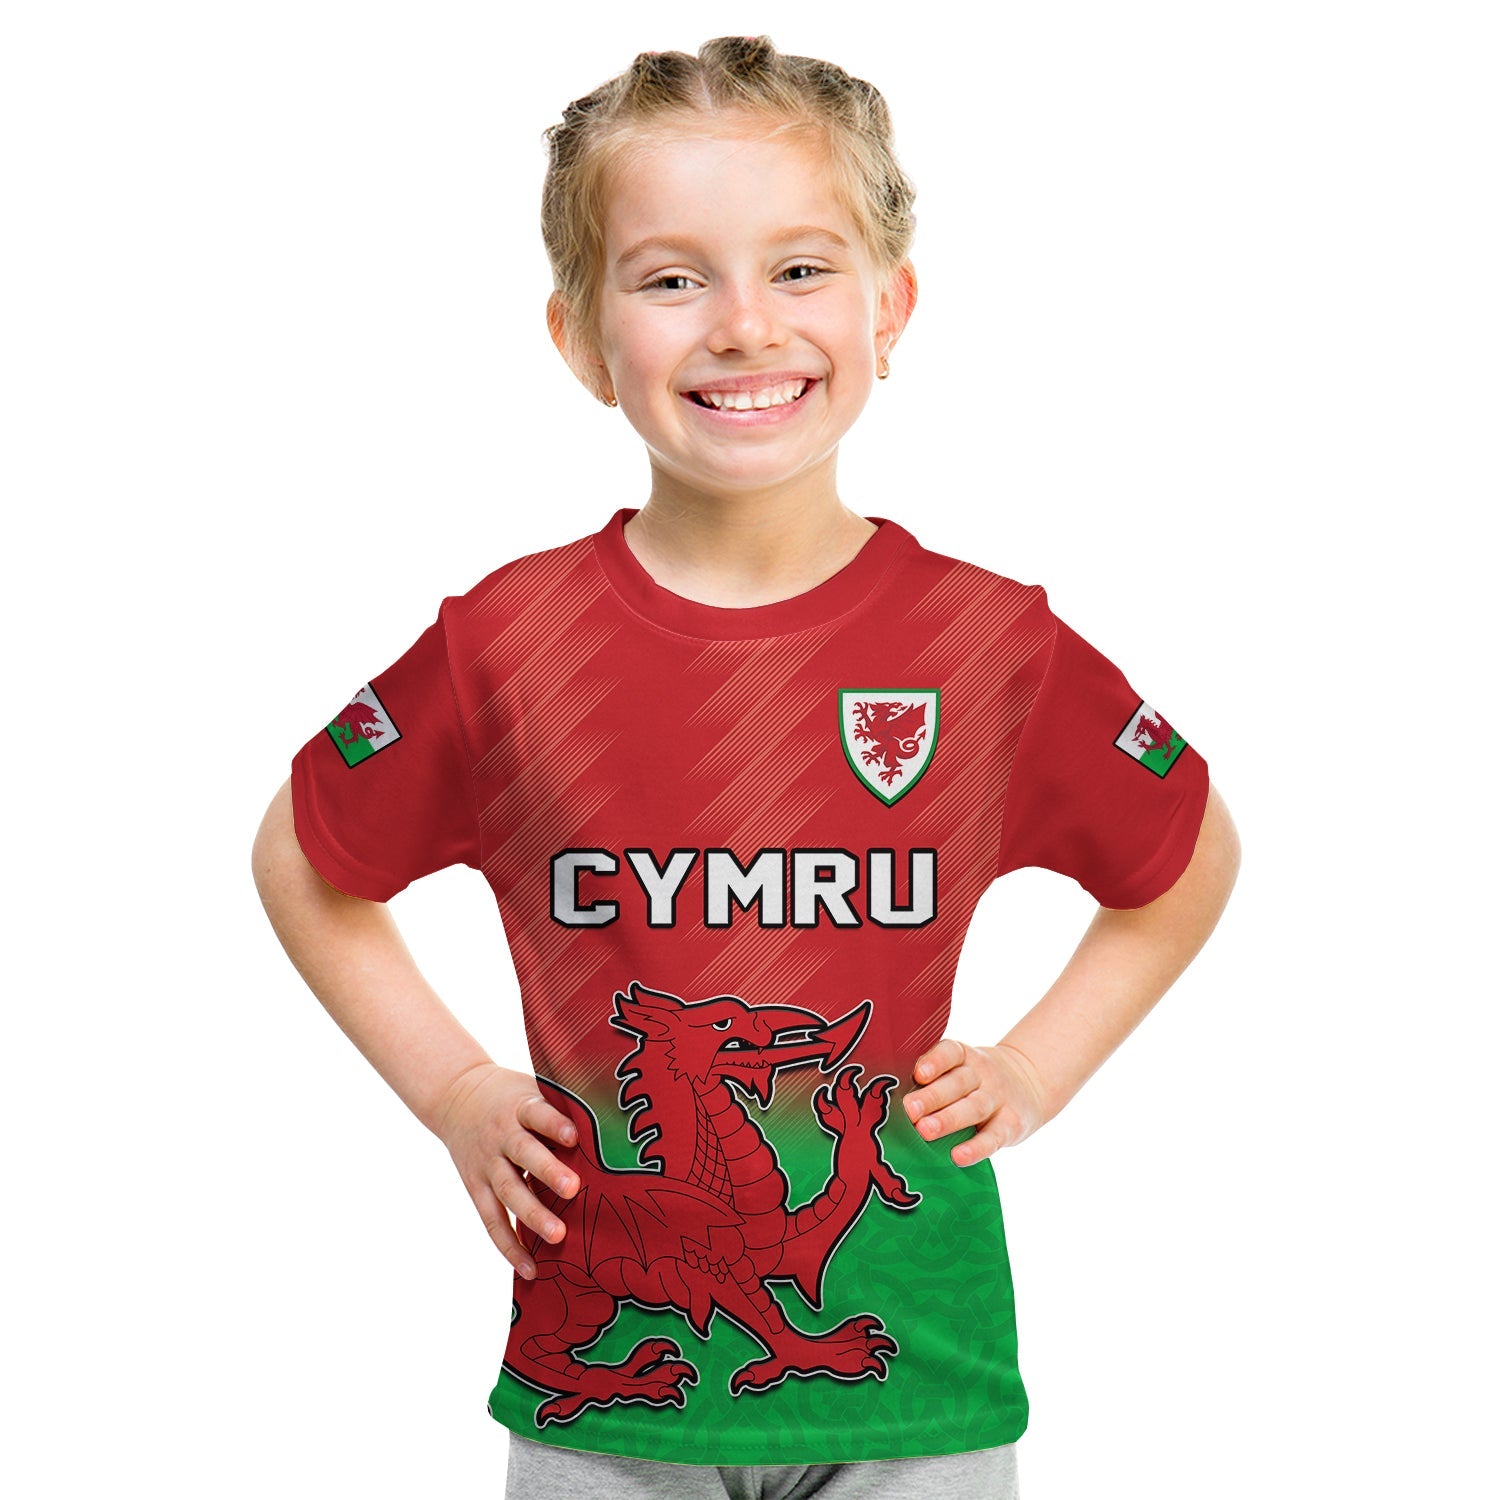 wales-football-t-shirt-kid-world-cup-2022-come-on-cymru-yma-o-hyd